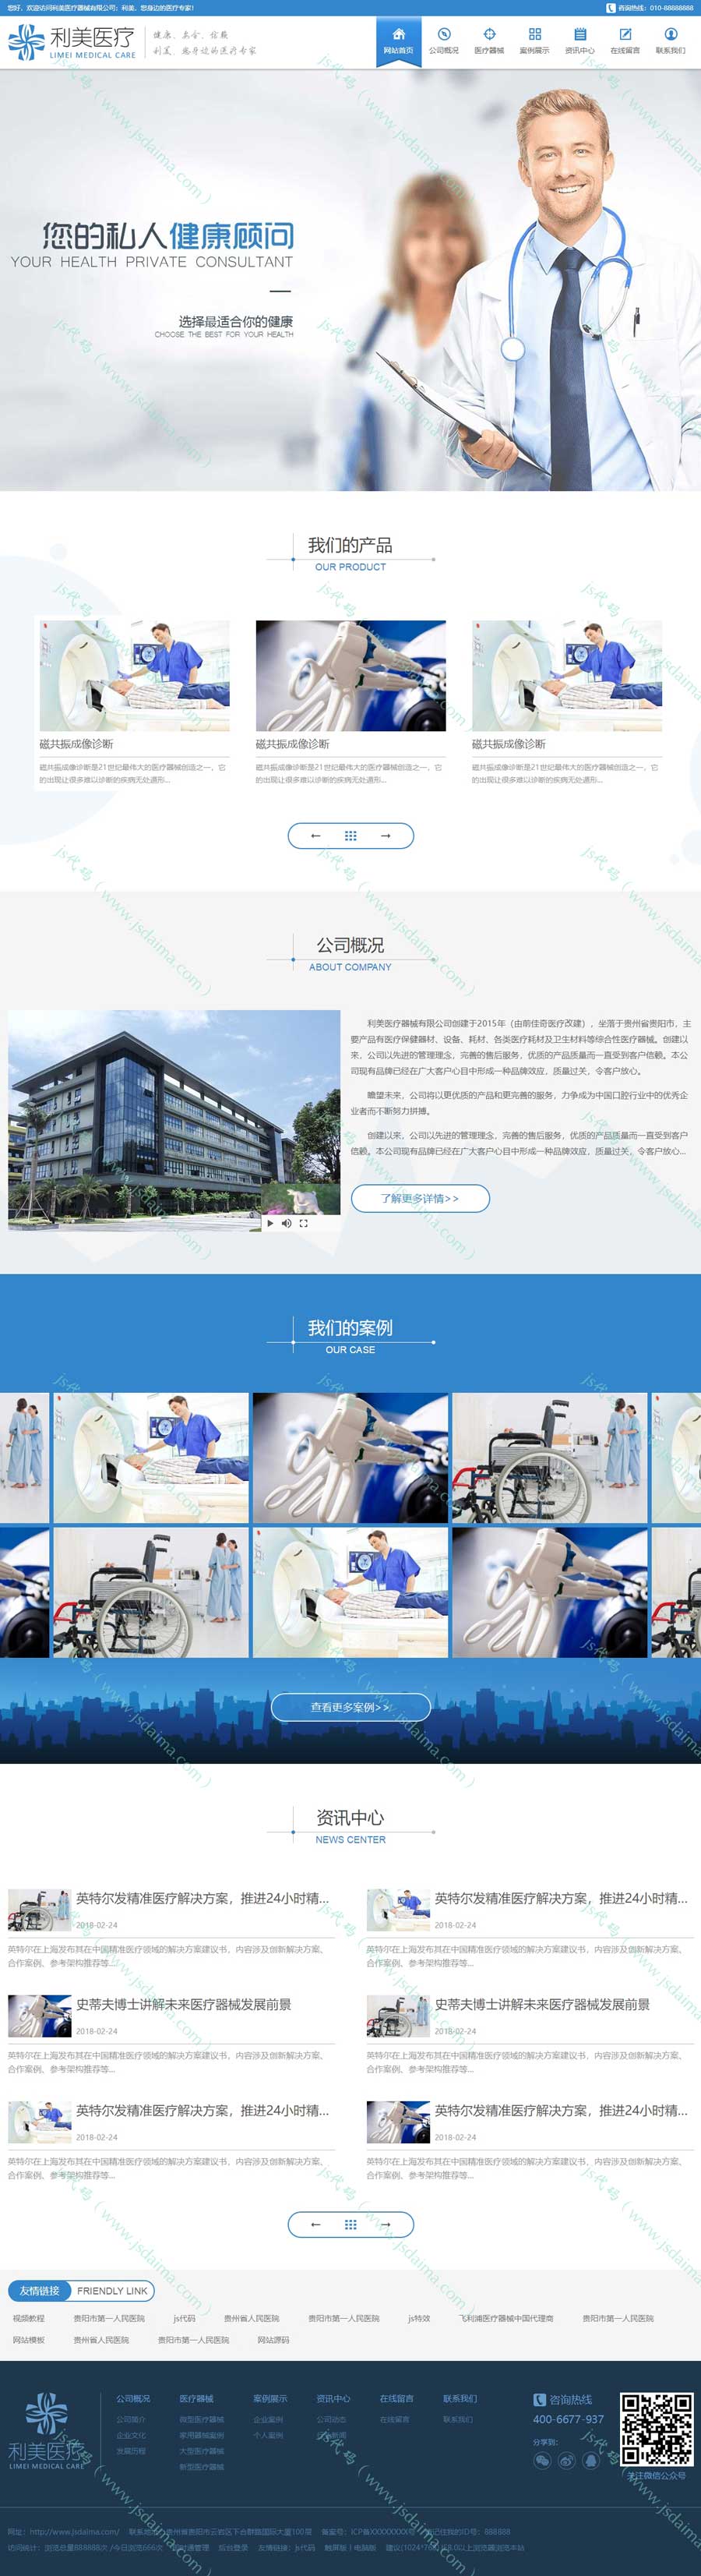 蓝色智能医疗设备制造公司企业网站模板